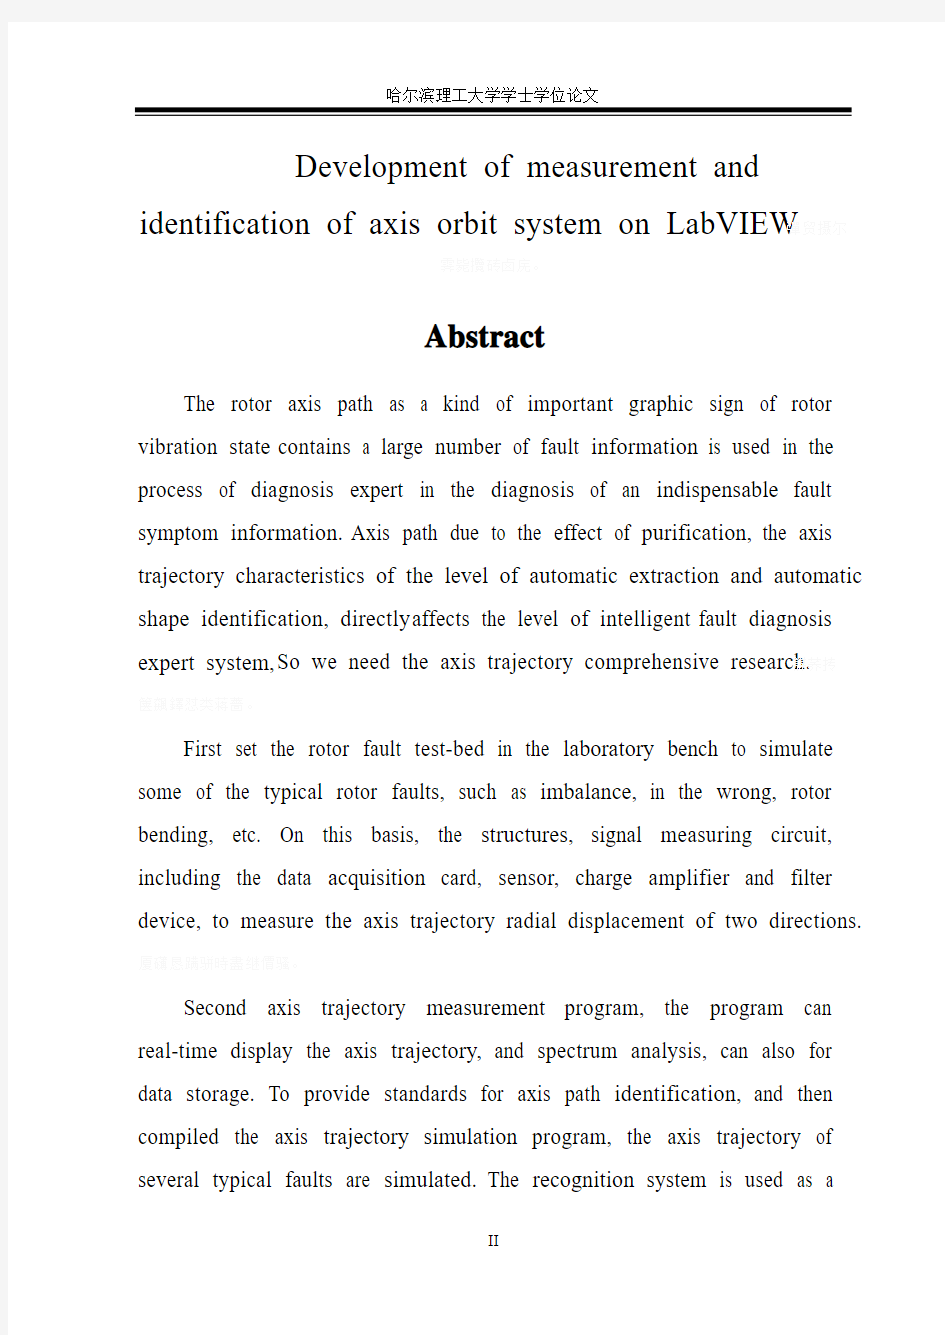 基于LabVIEW转子轴心轨迹测量与识别系统开发毕业设计